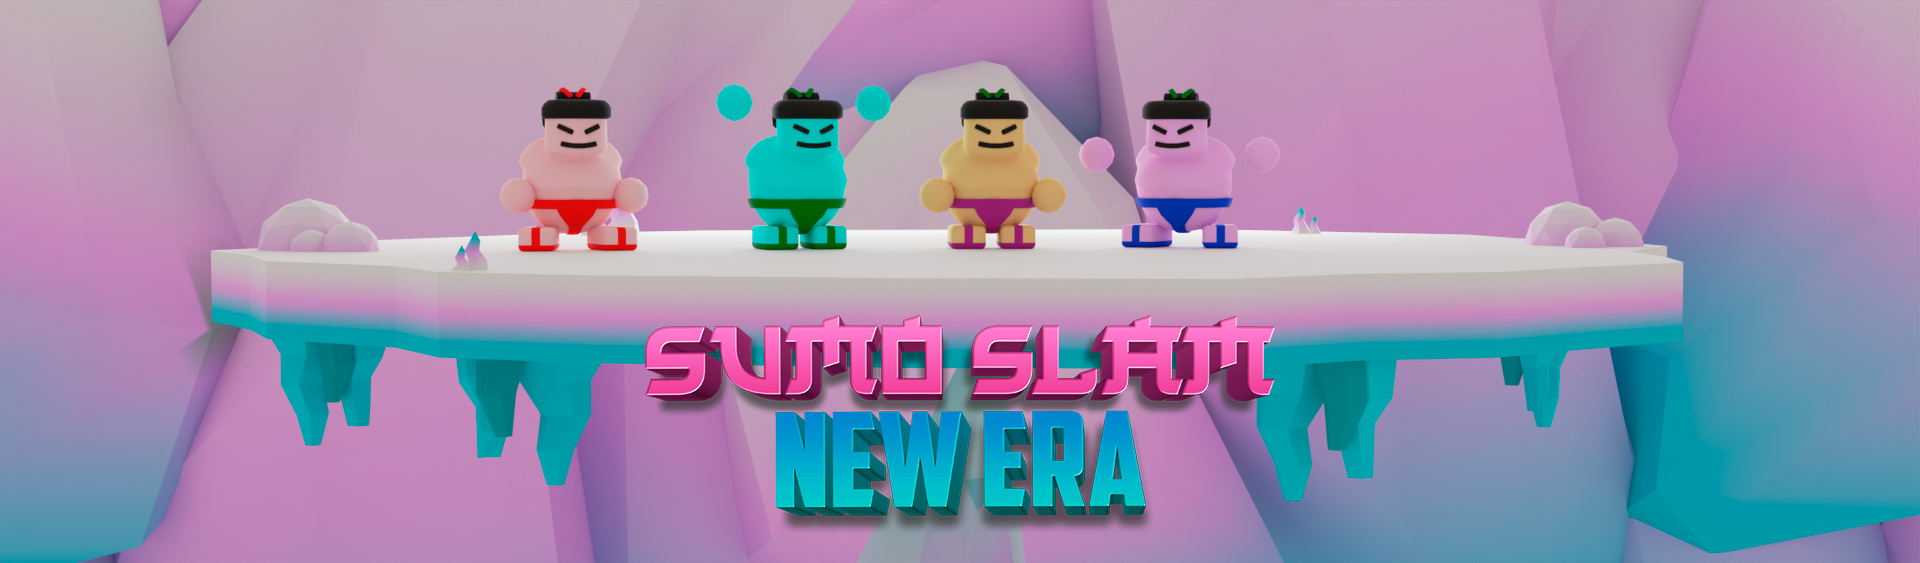 Sumo Slam New Era